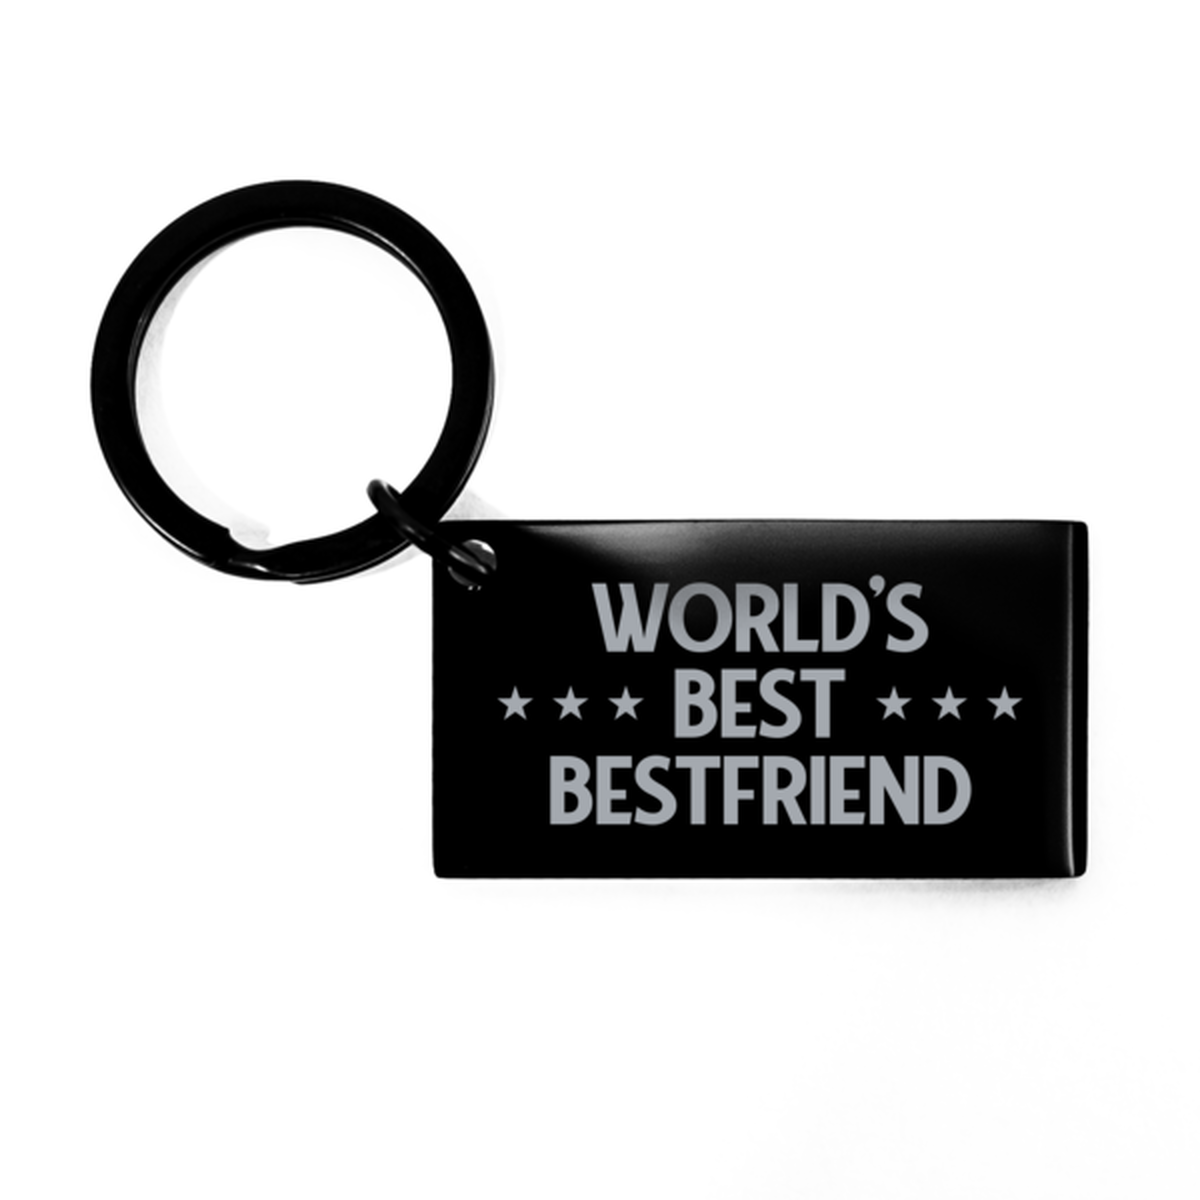 Worlds Best Bestfriend Gifts, Funny Black Engraved Keychain For Bestfriend, Birthday Presents For Men Women